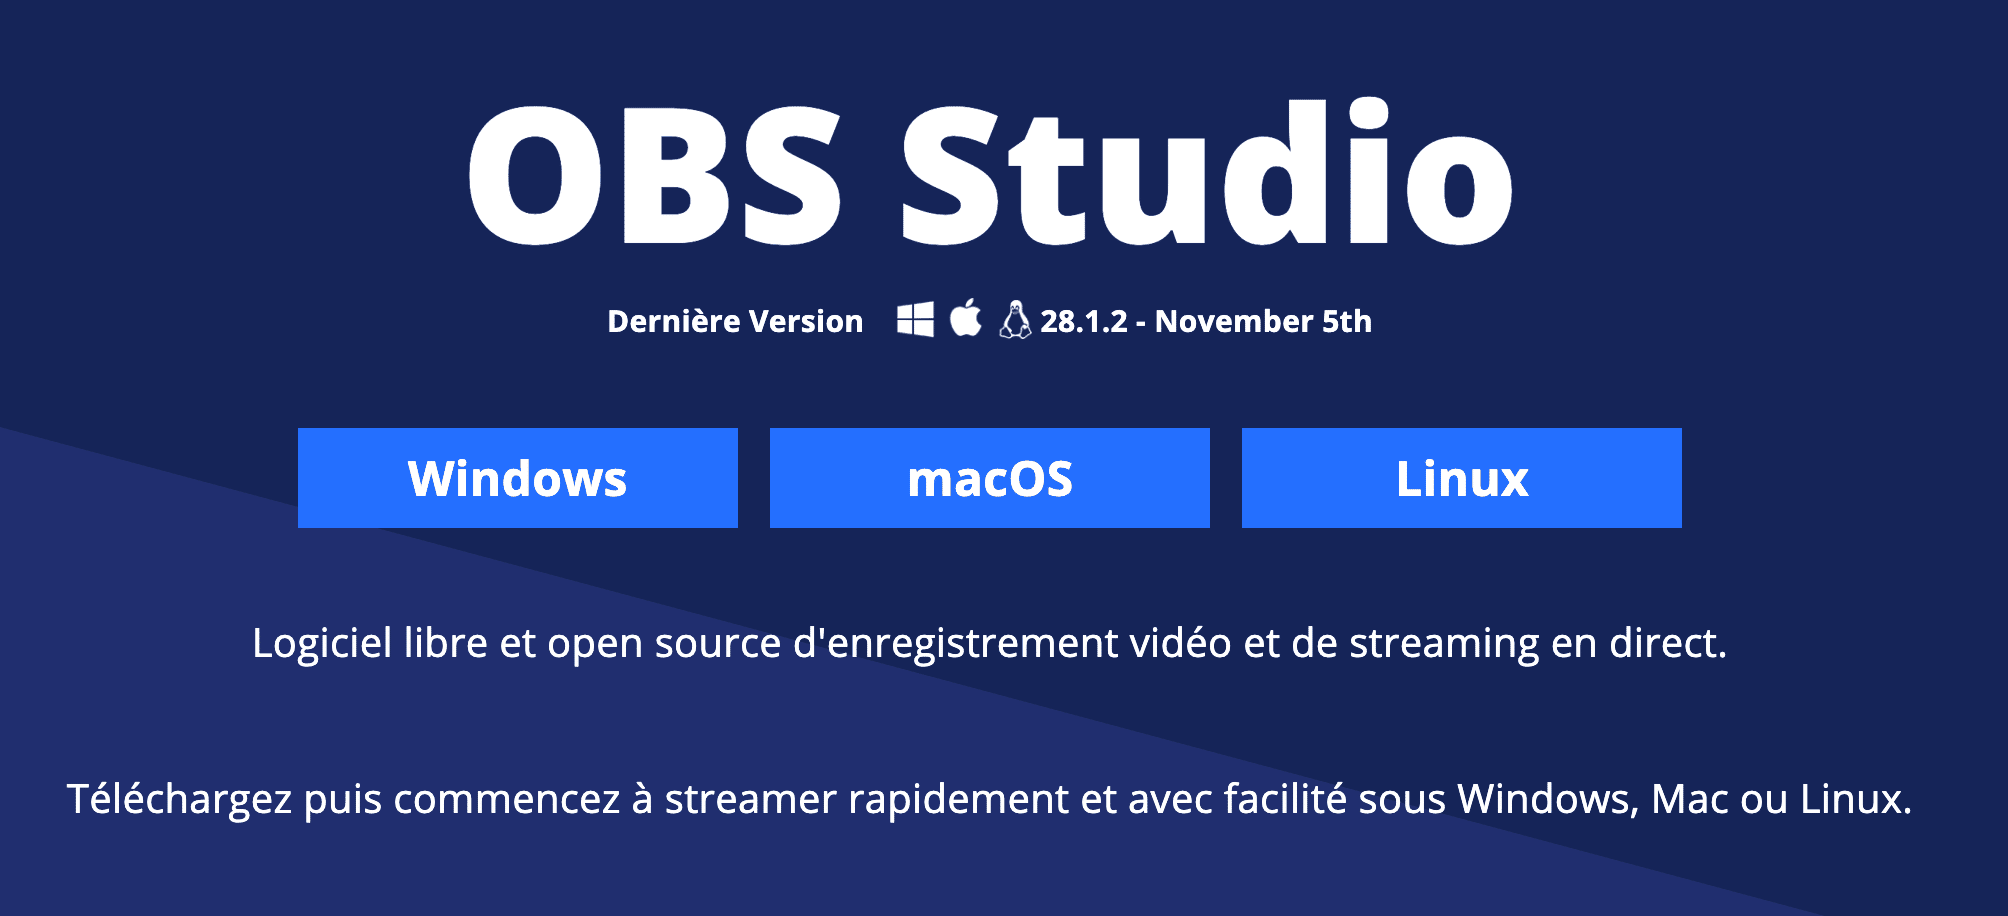 OBS Studio est un logiciel libre et open source d'enregistrement vidéo et de streaming en direct.